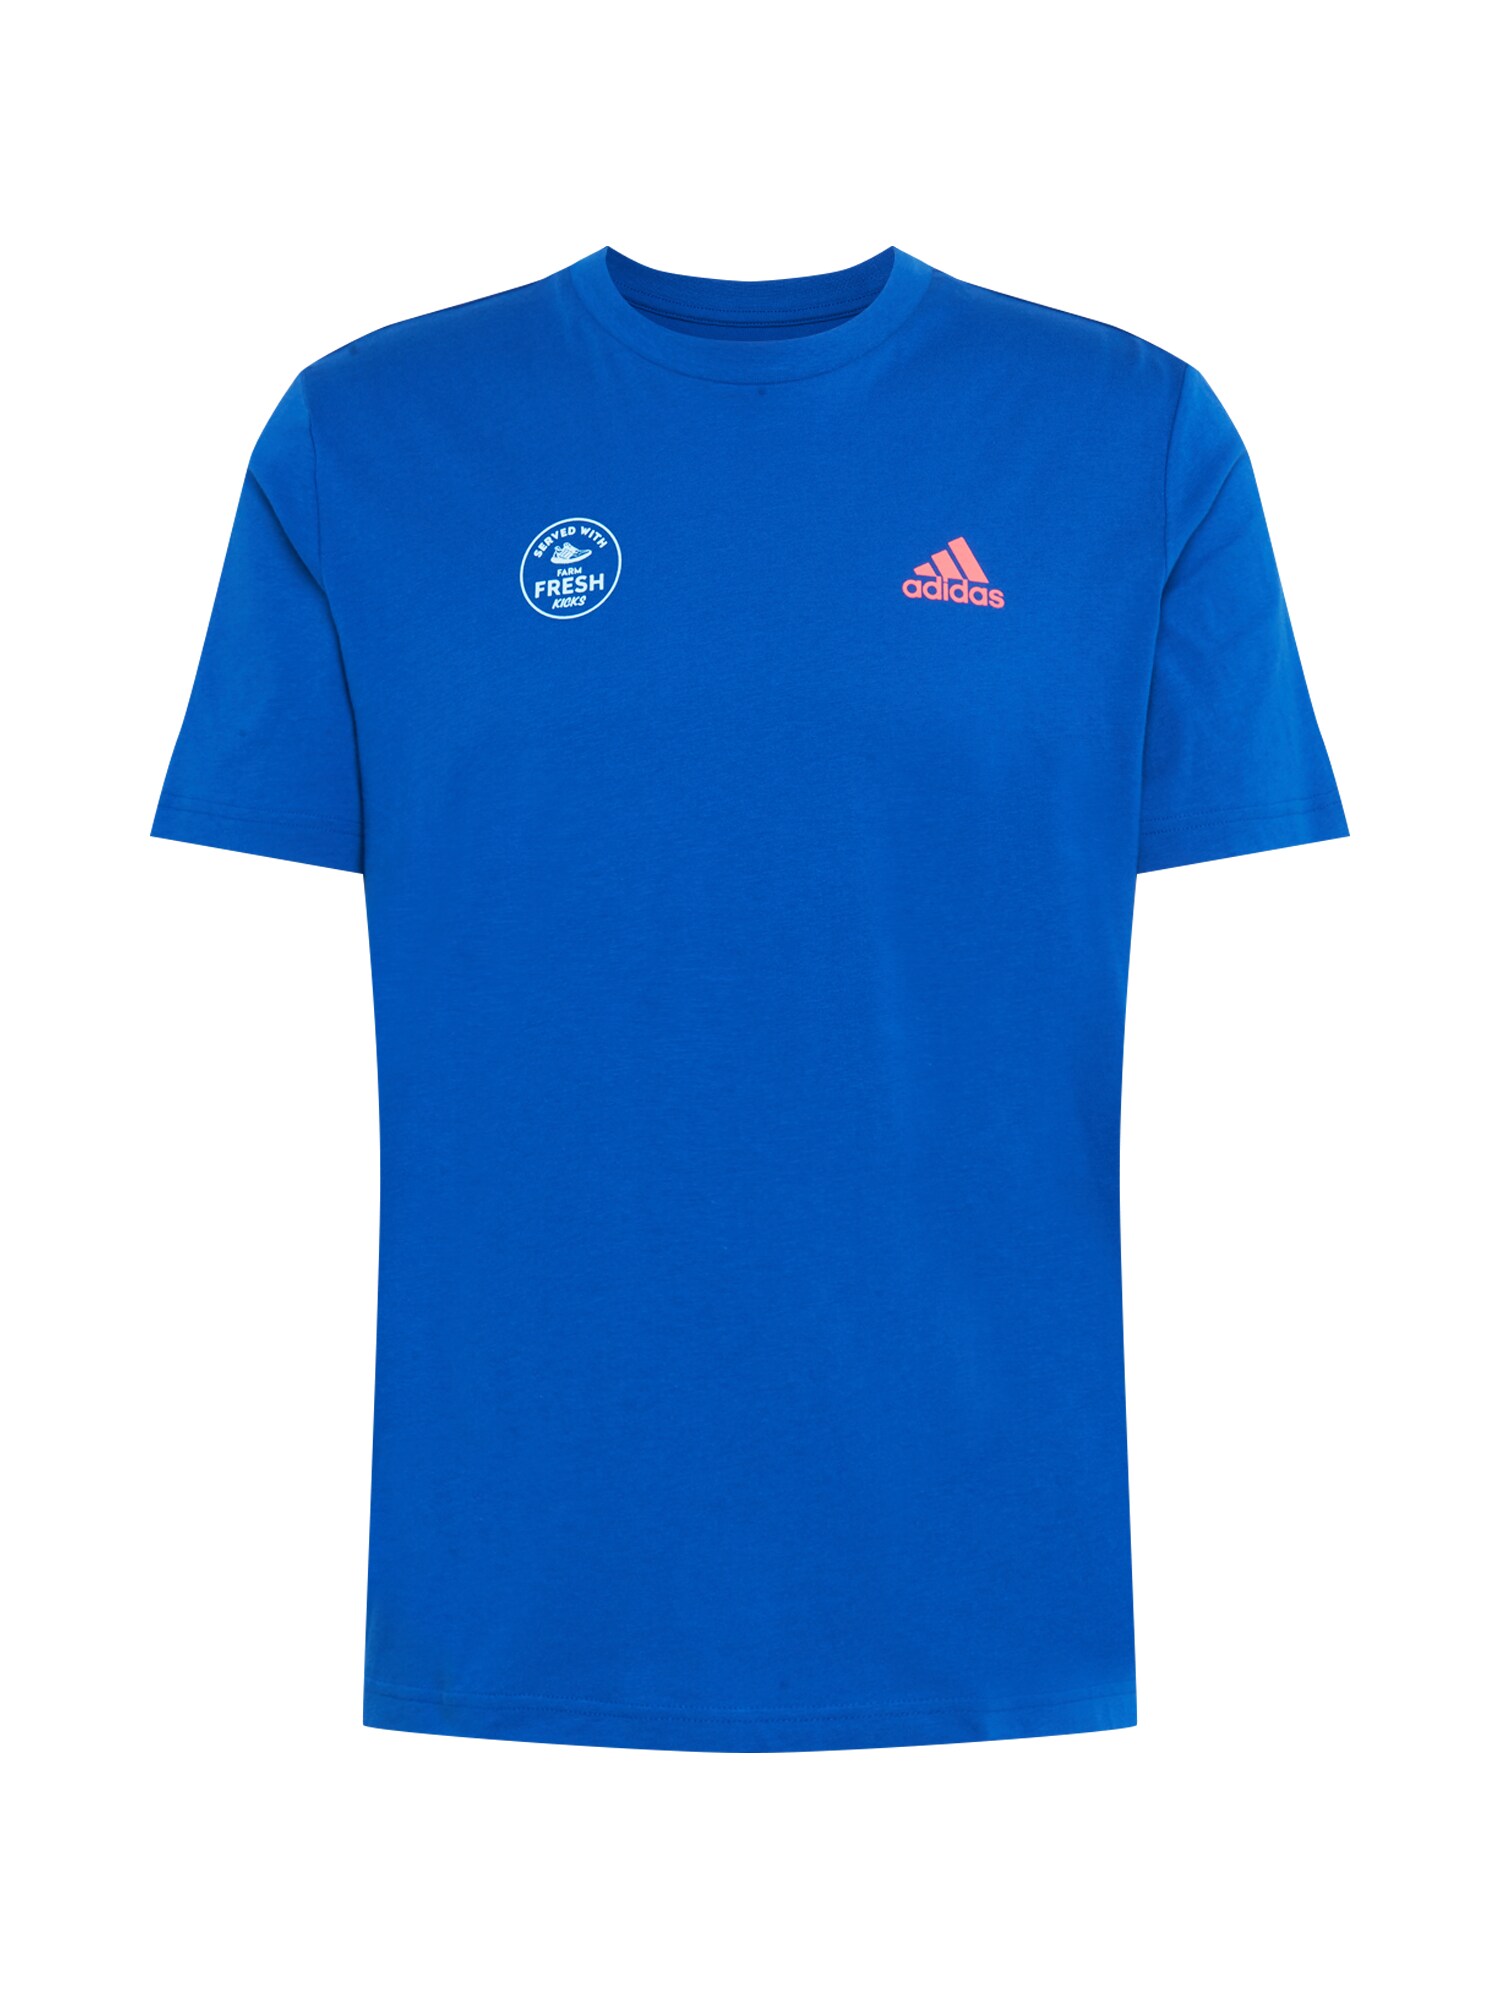 ADIDAS PERFORMANCE Sportiniai marškinėliai  mišrios spalvos / mėlyna